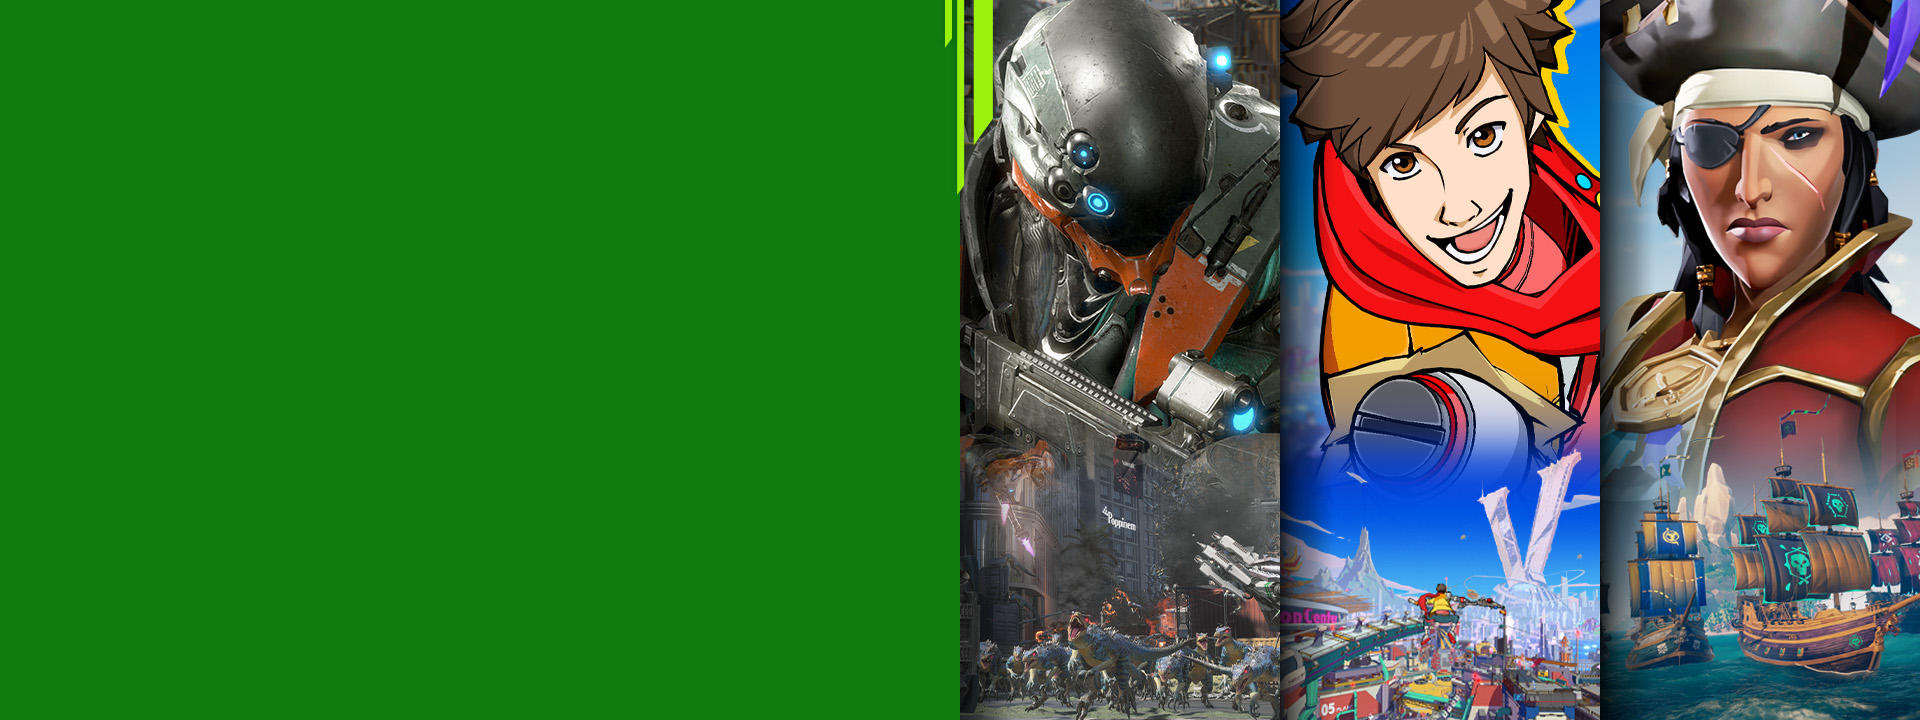 Frontvisning av ulike Xbox-spillfigurer fra Exoprimal, Hi-Fi Rush og Sea of Thieves.